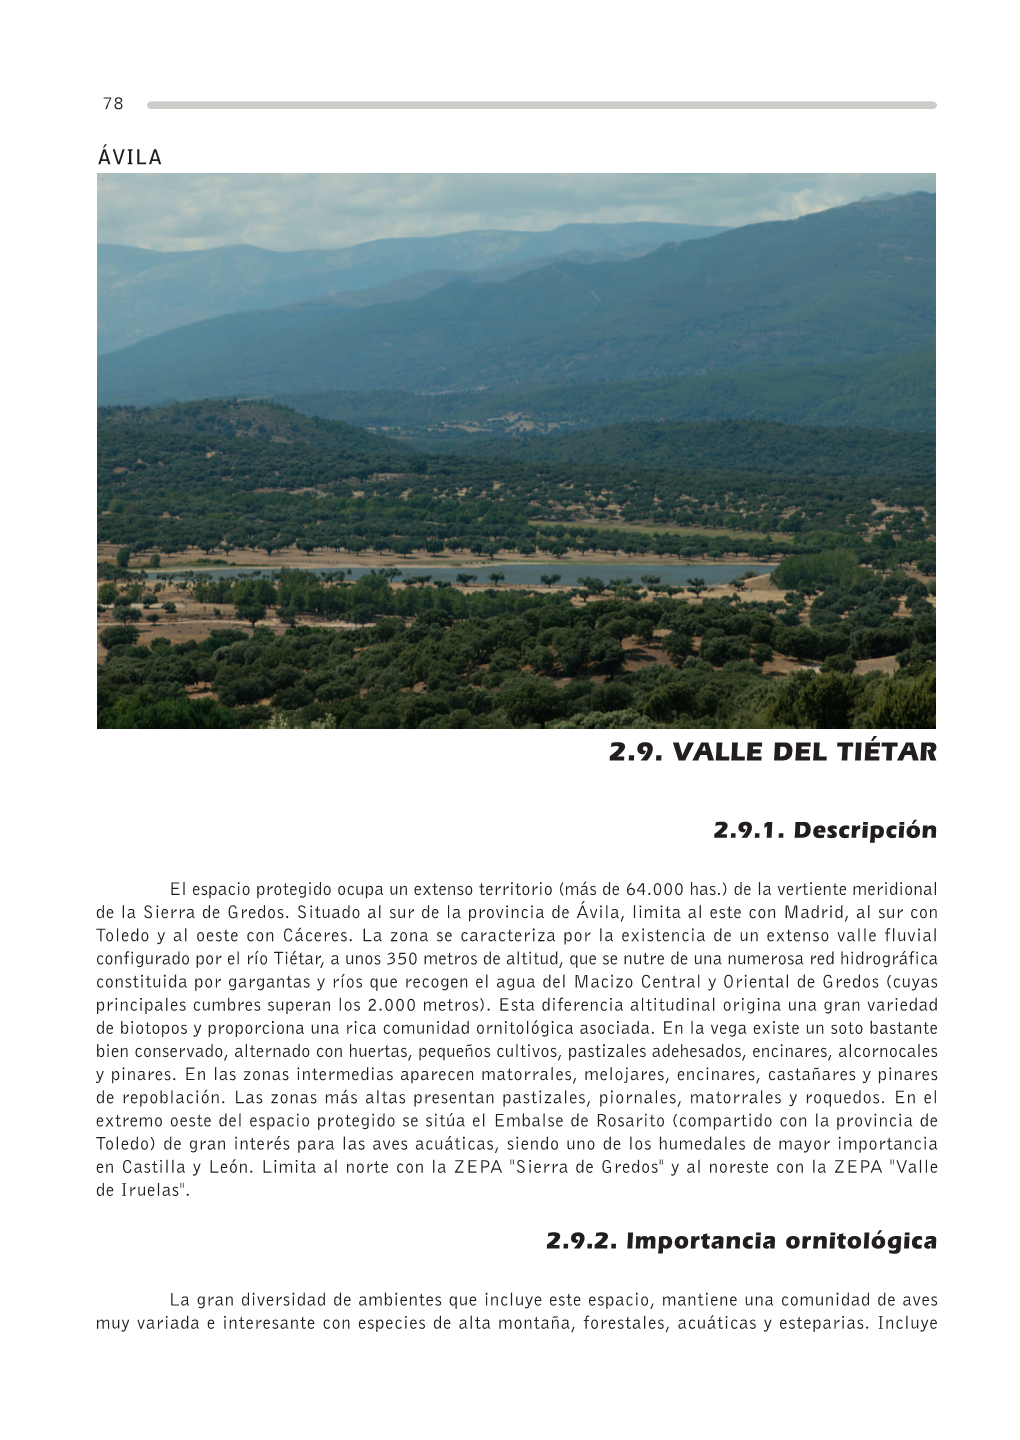 2.9. Valle Del Tiétar